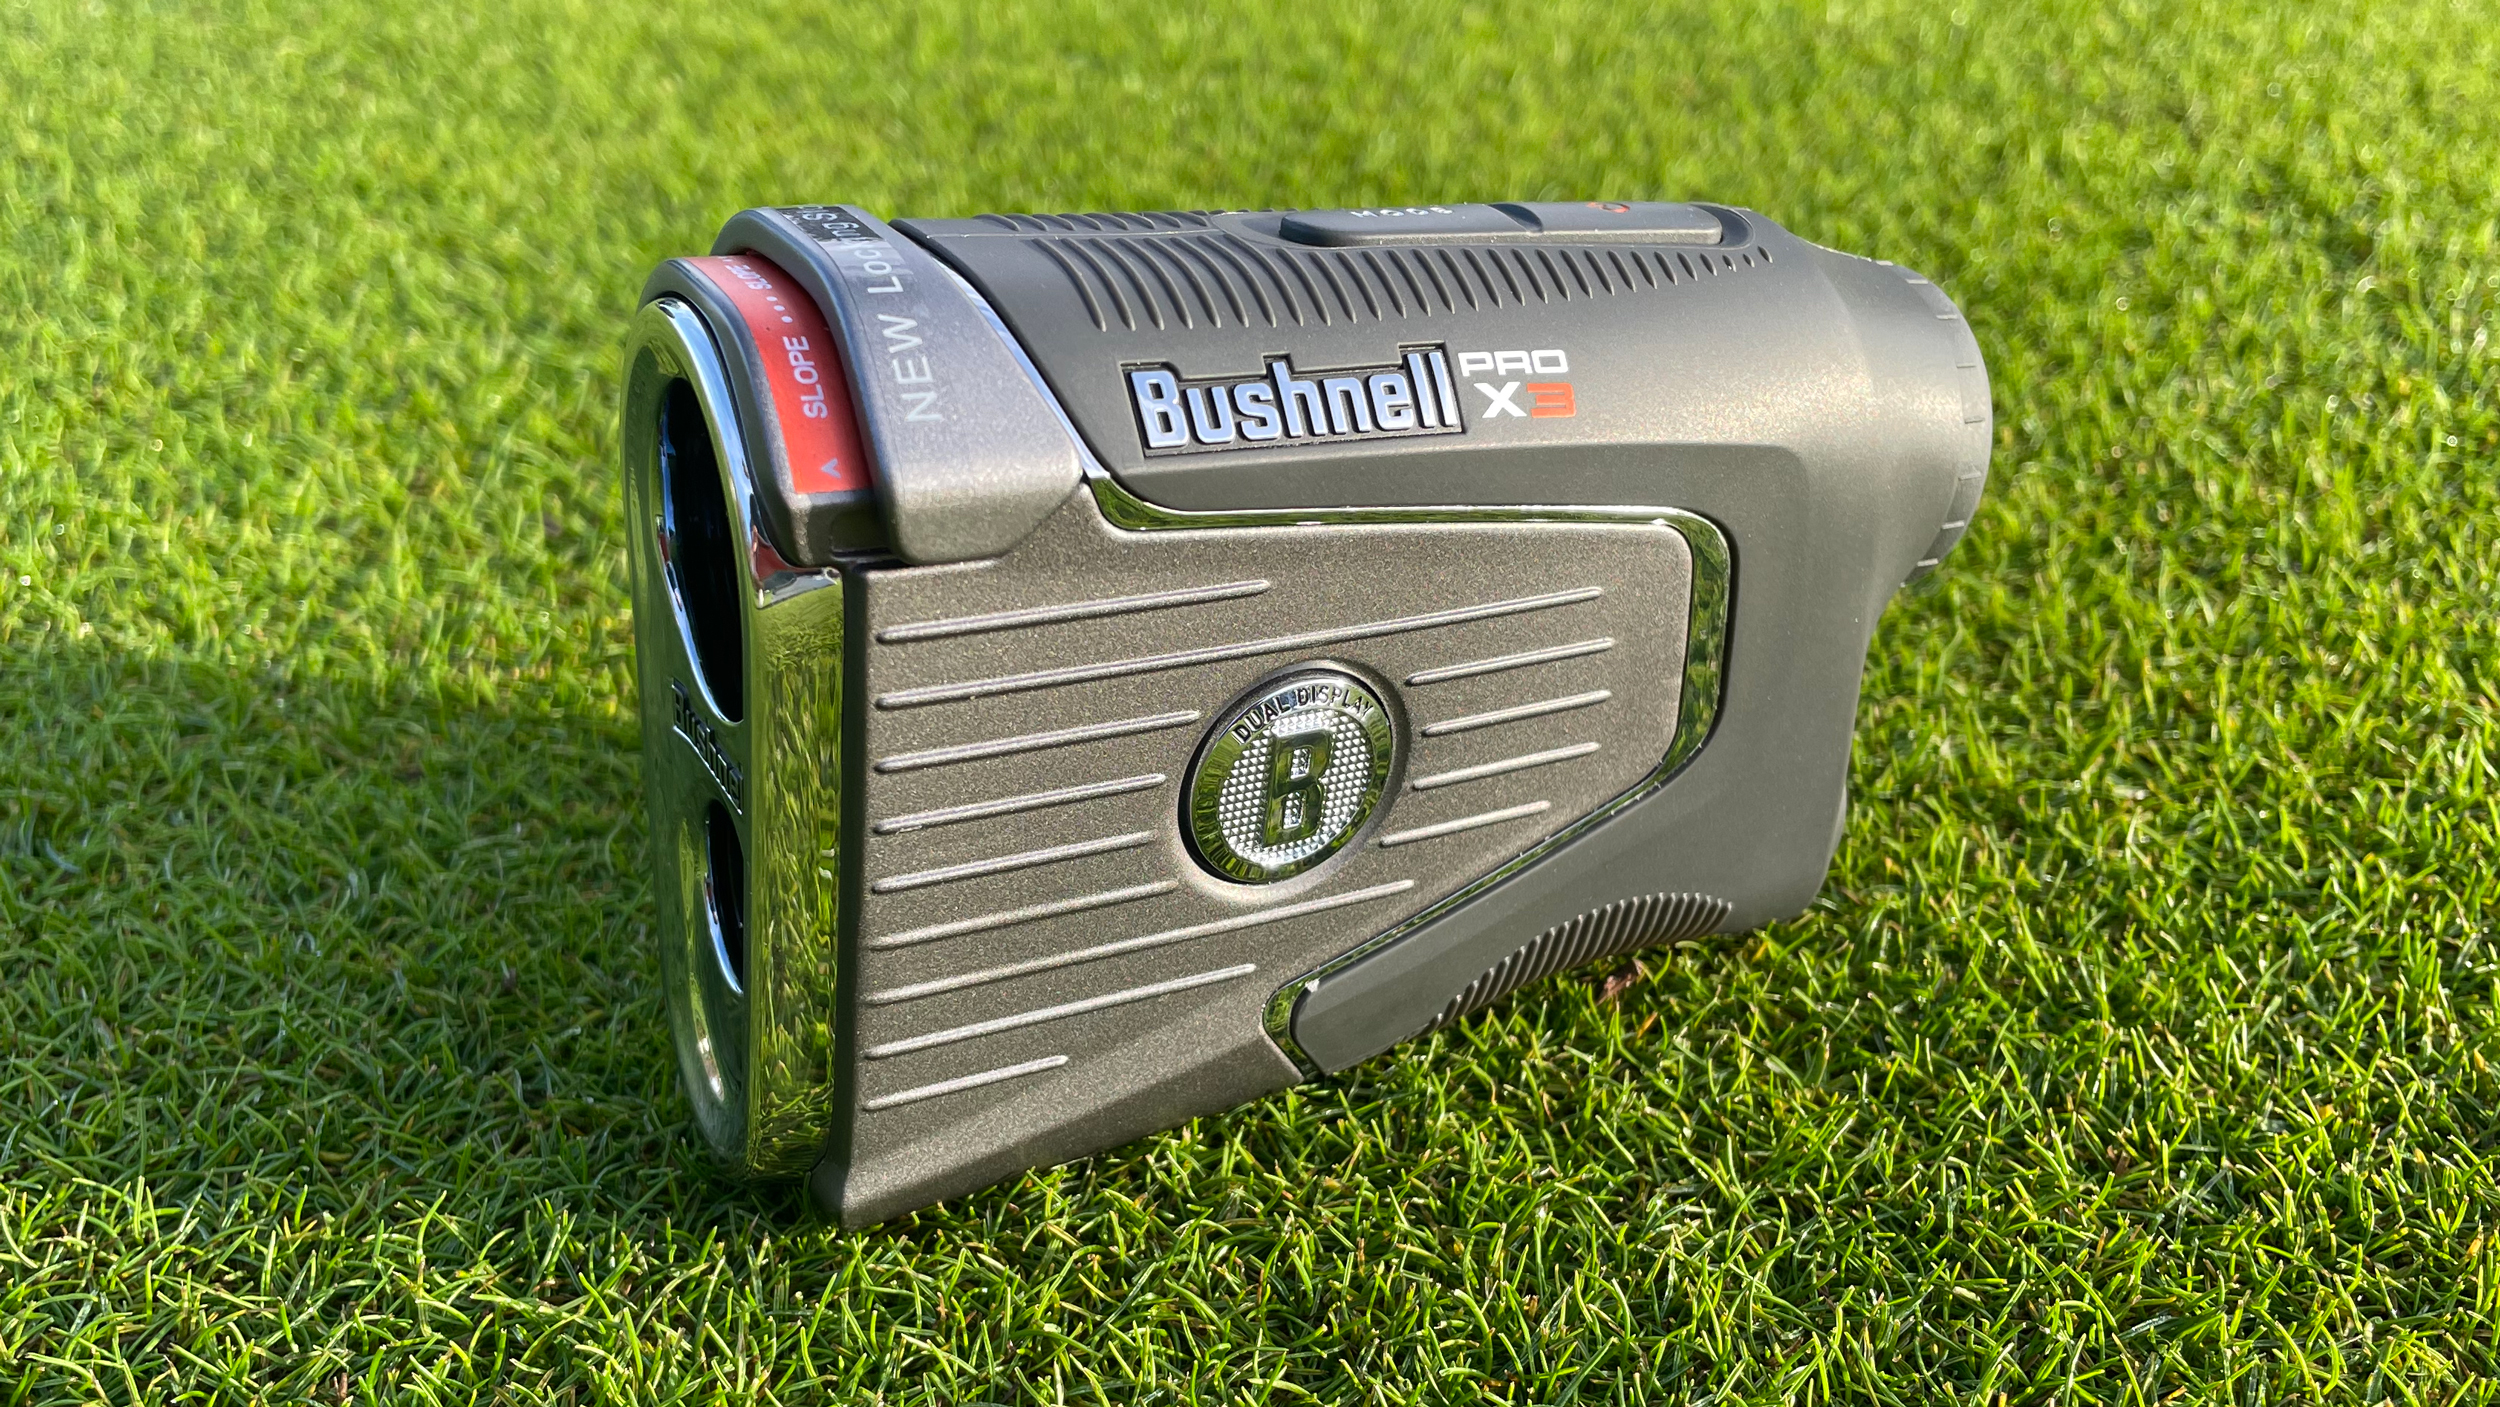 Bushnell Pro X3 Golf Rangefinder Review | Golf Monthly